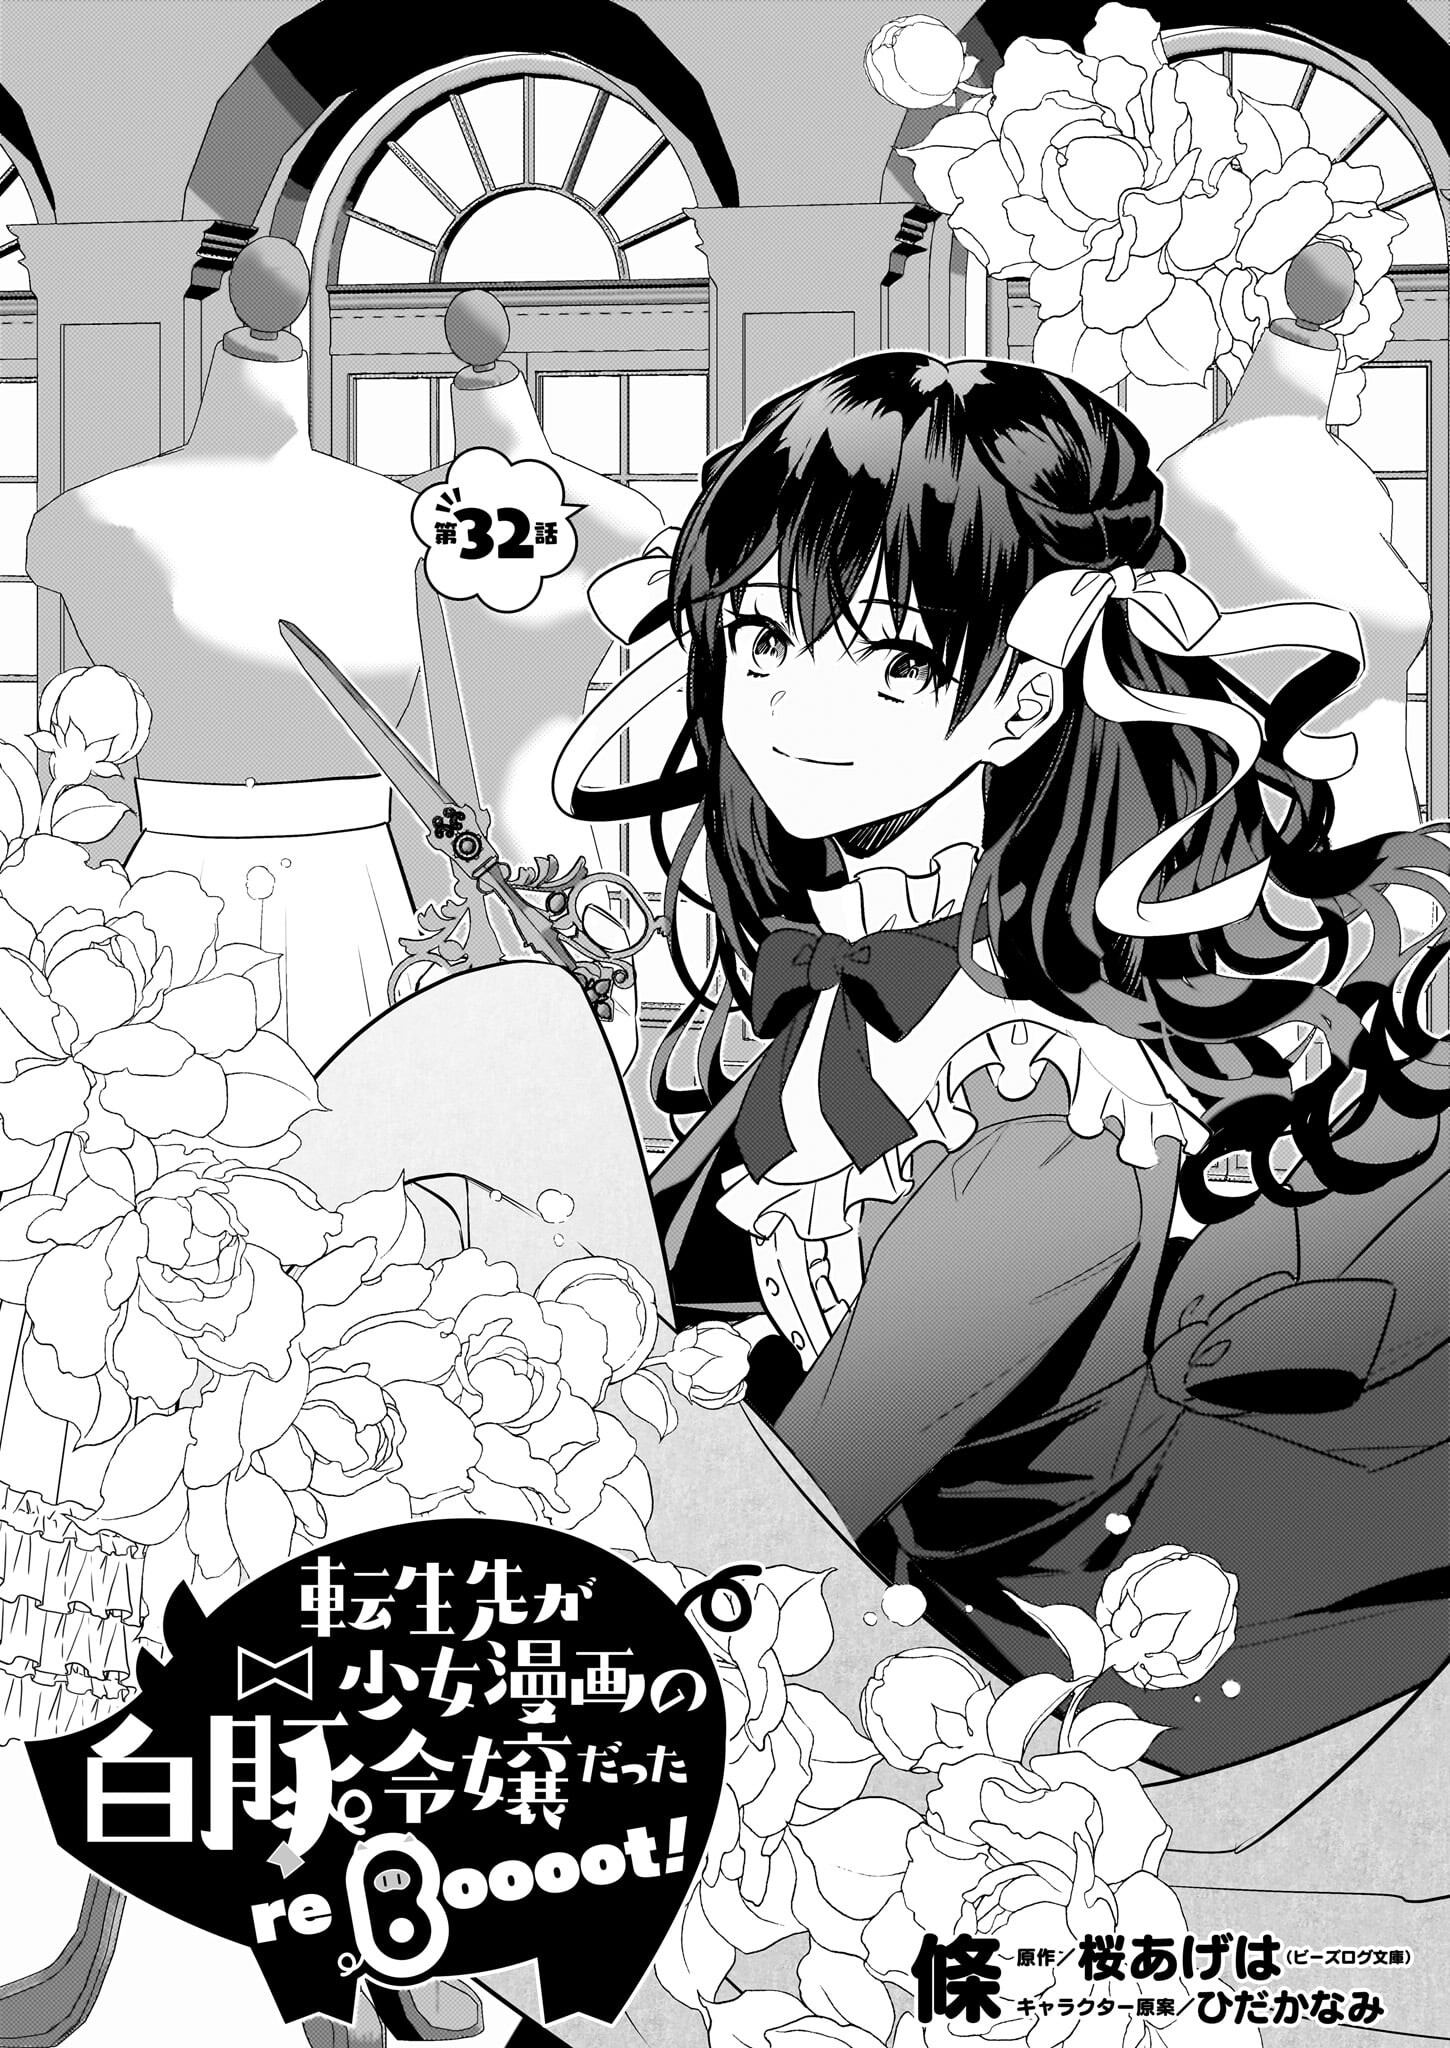 Tenseisaki ga Shoujo Manga no Shirobuta Reijou datta reBoooot! - Chapter 32 - Page 1